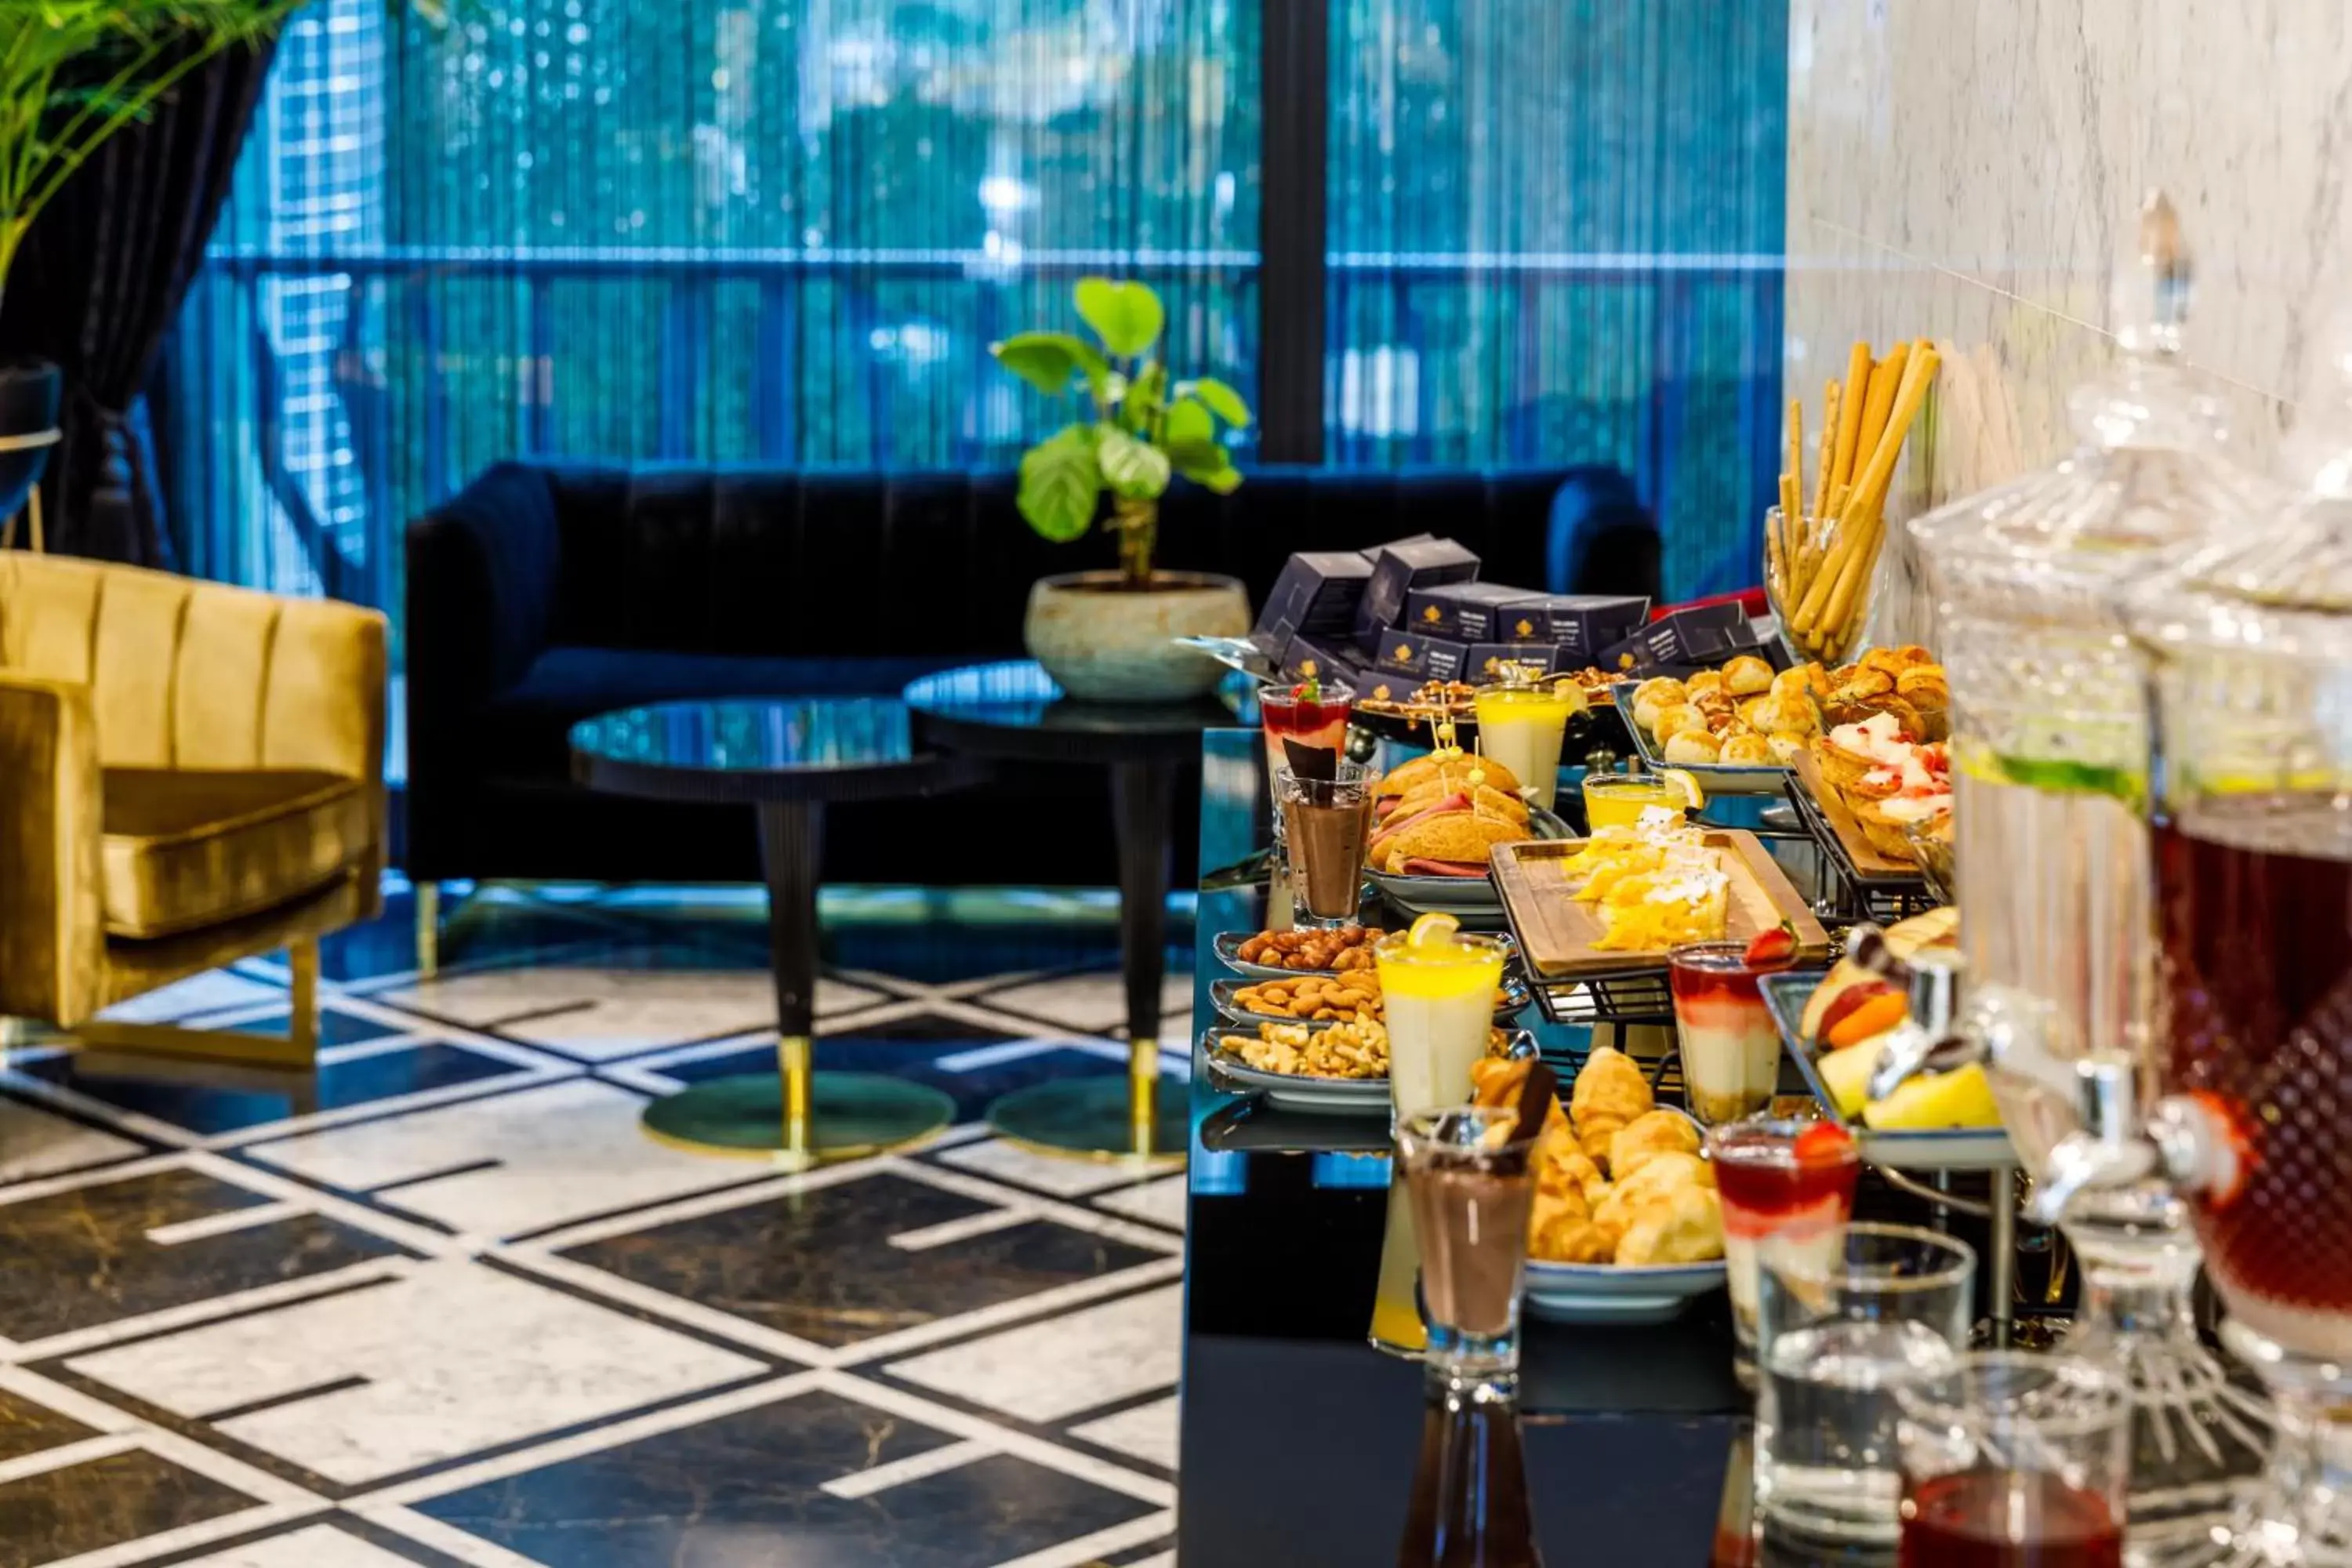 Buffet breakfast in Euro Design Hotel